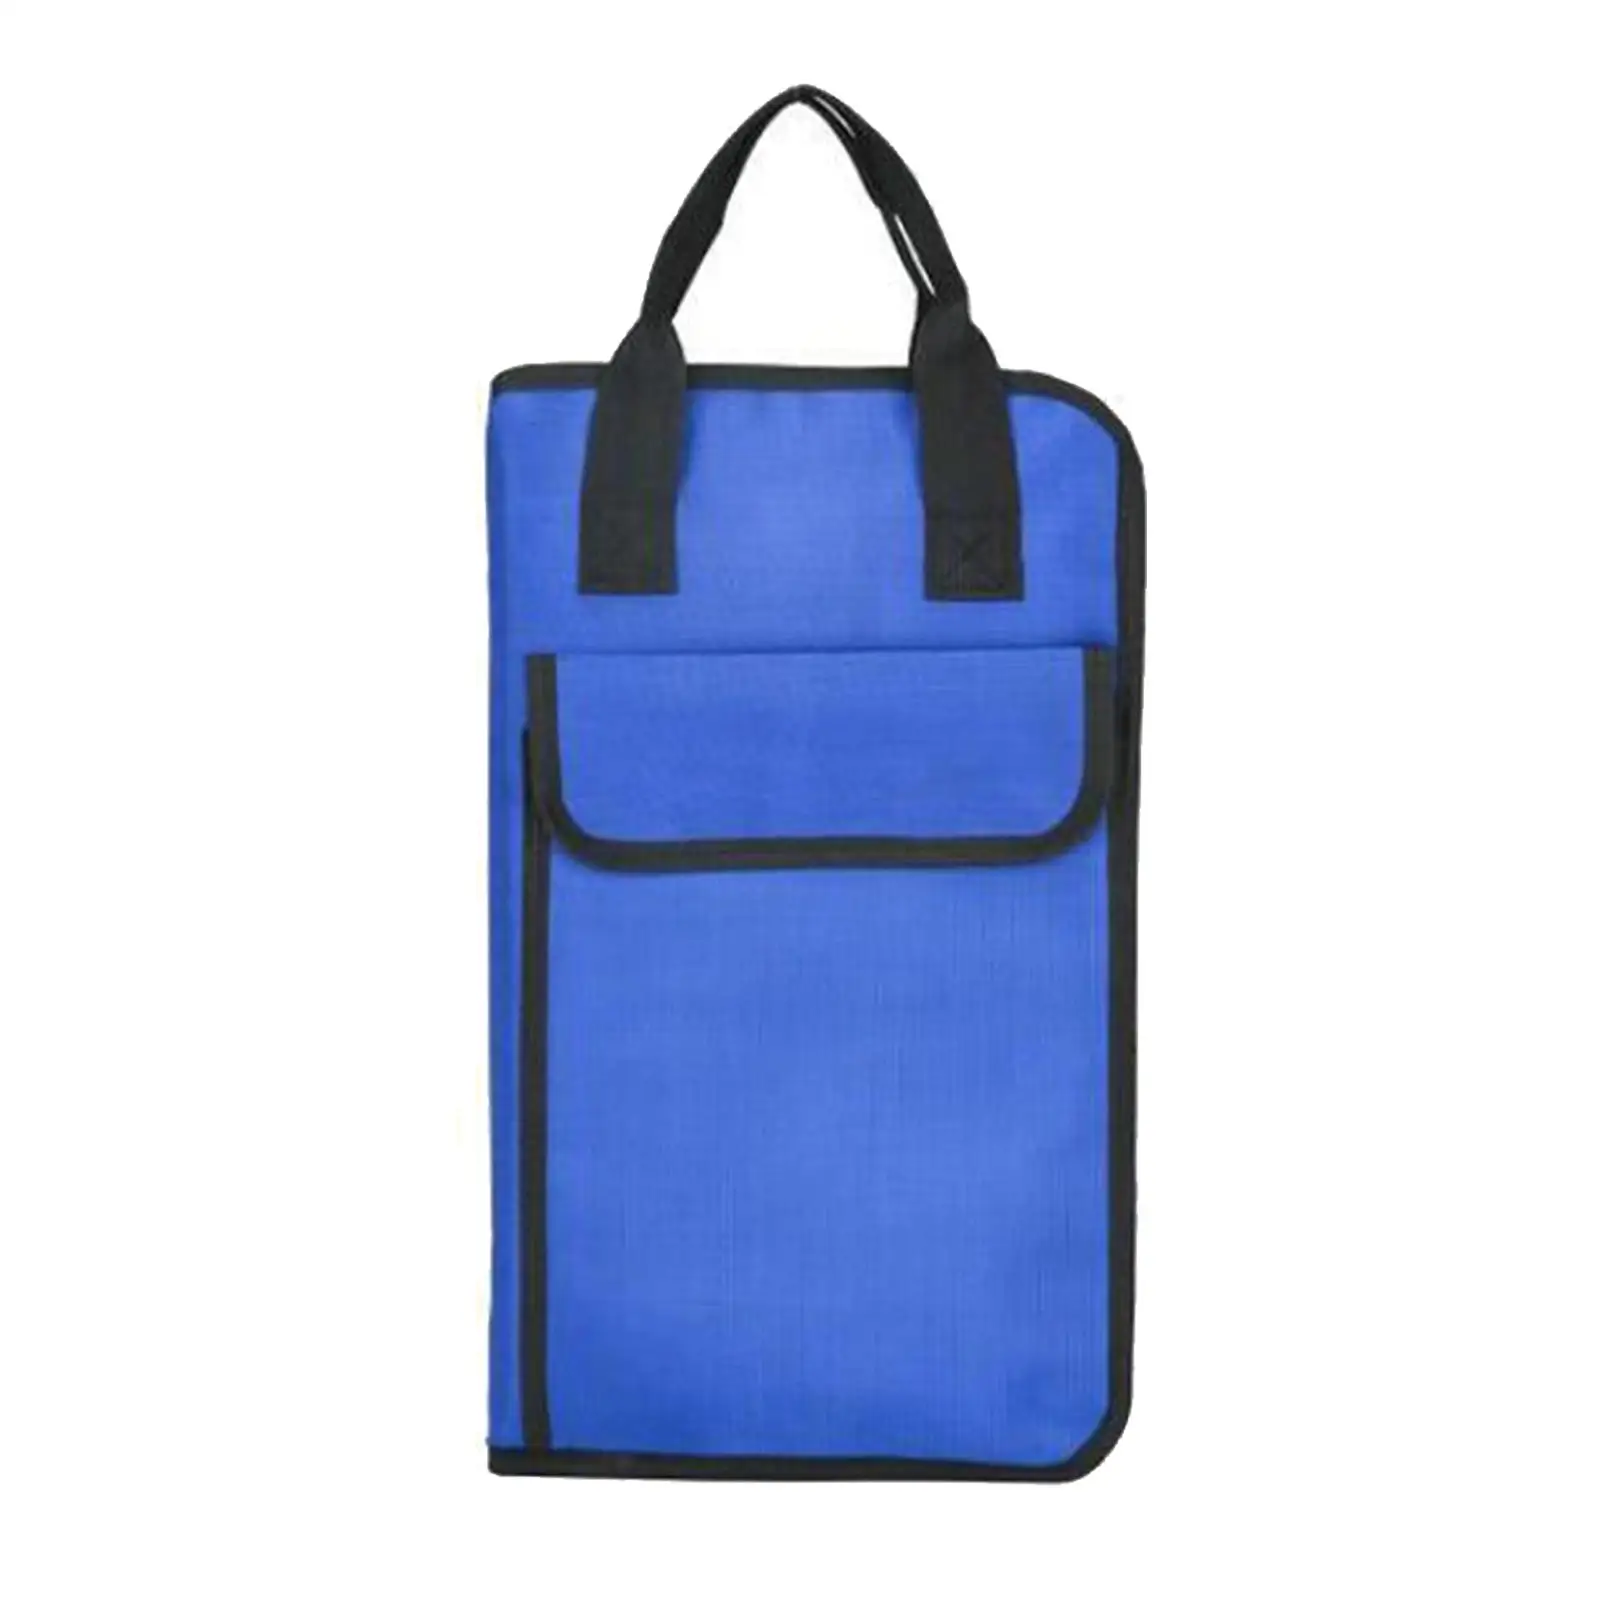 Drumstick Bag Mallet Bag with Shoulder Strap Water Resistant Large Capacity Drum